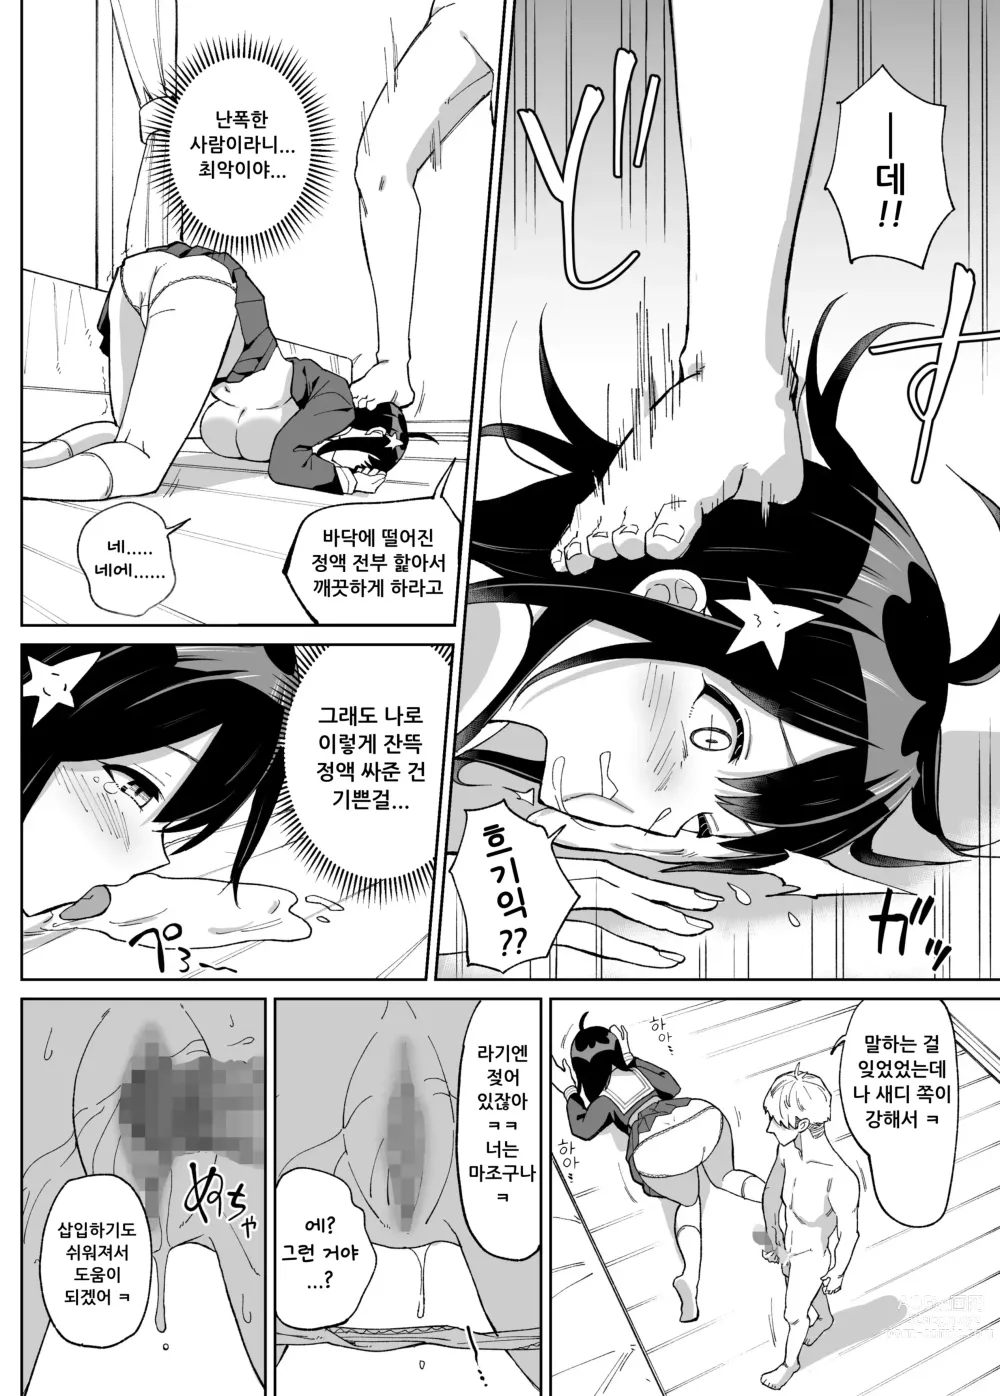 Page 19 of doujinshi 소꿉친구인 그녀에게 받은 X'mas 선물은 네토라레 였습니다